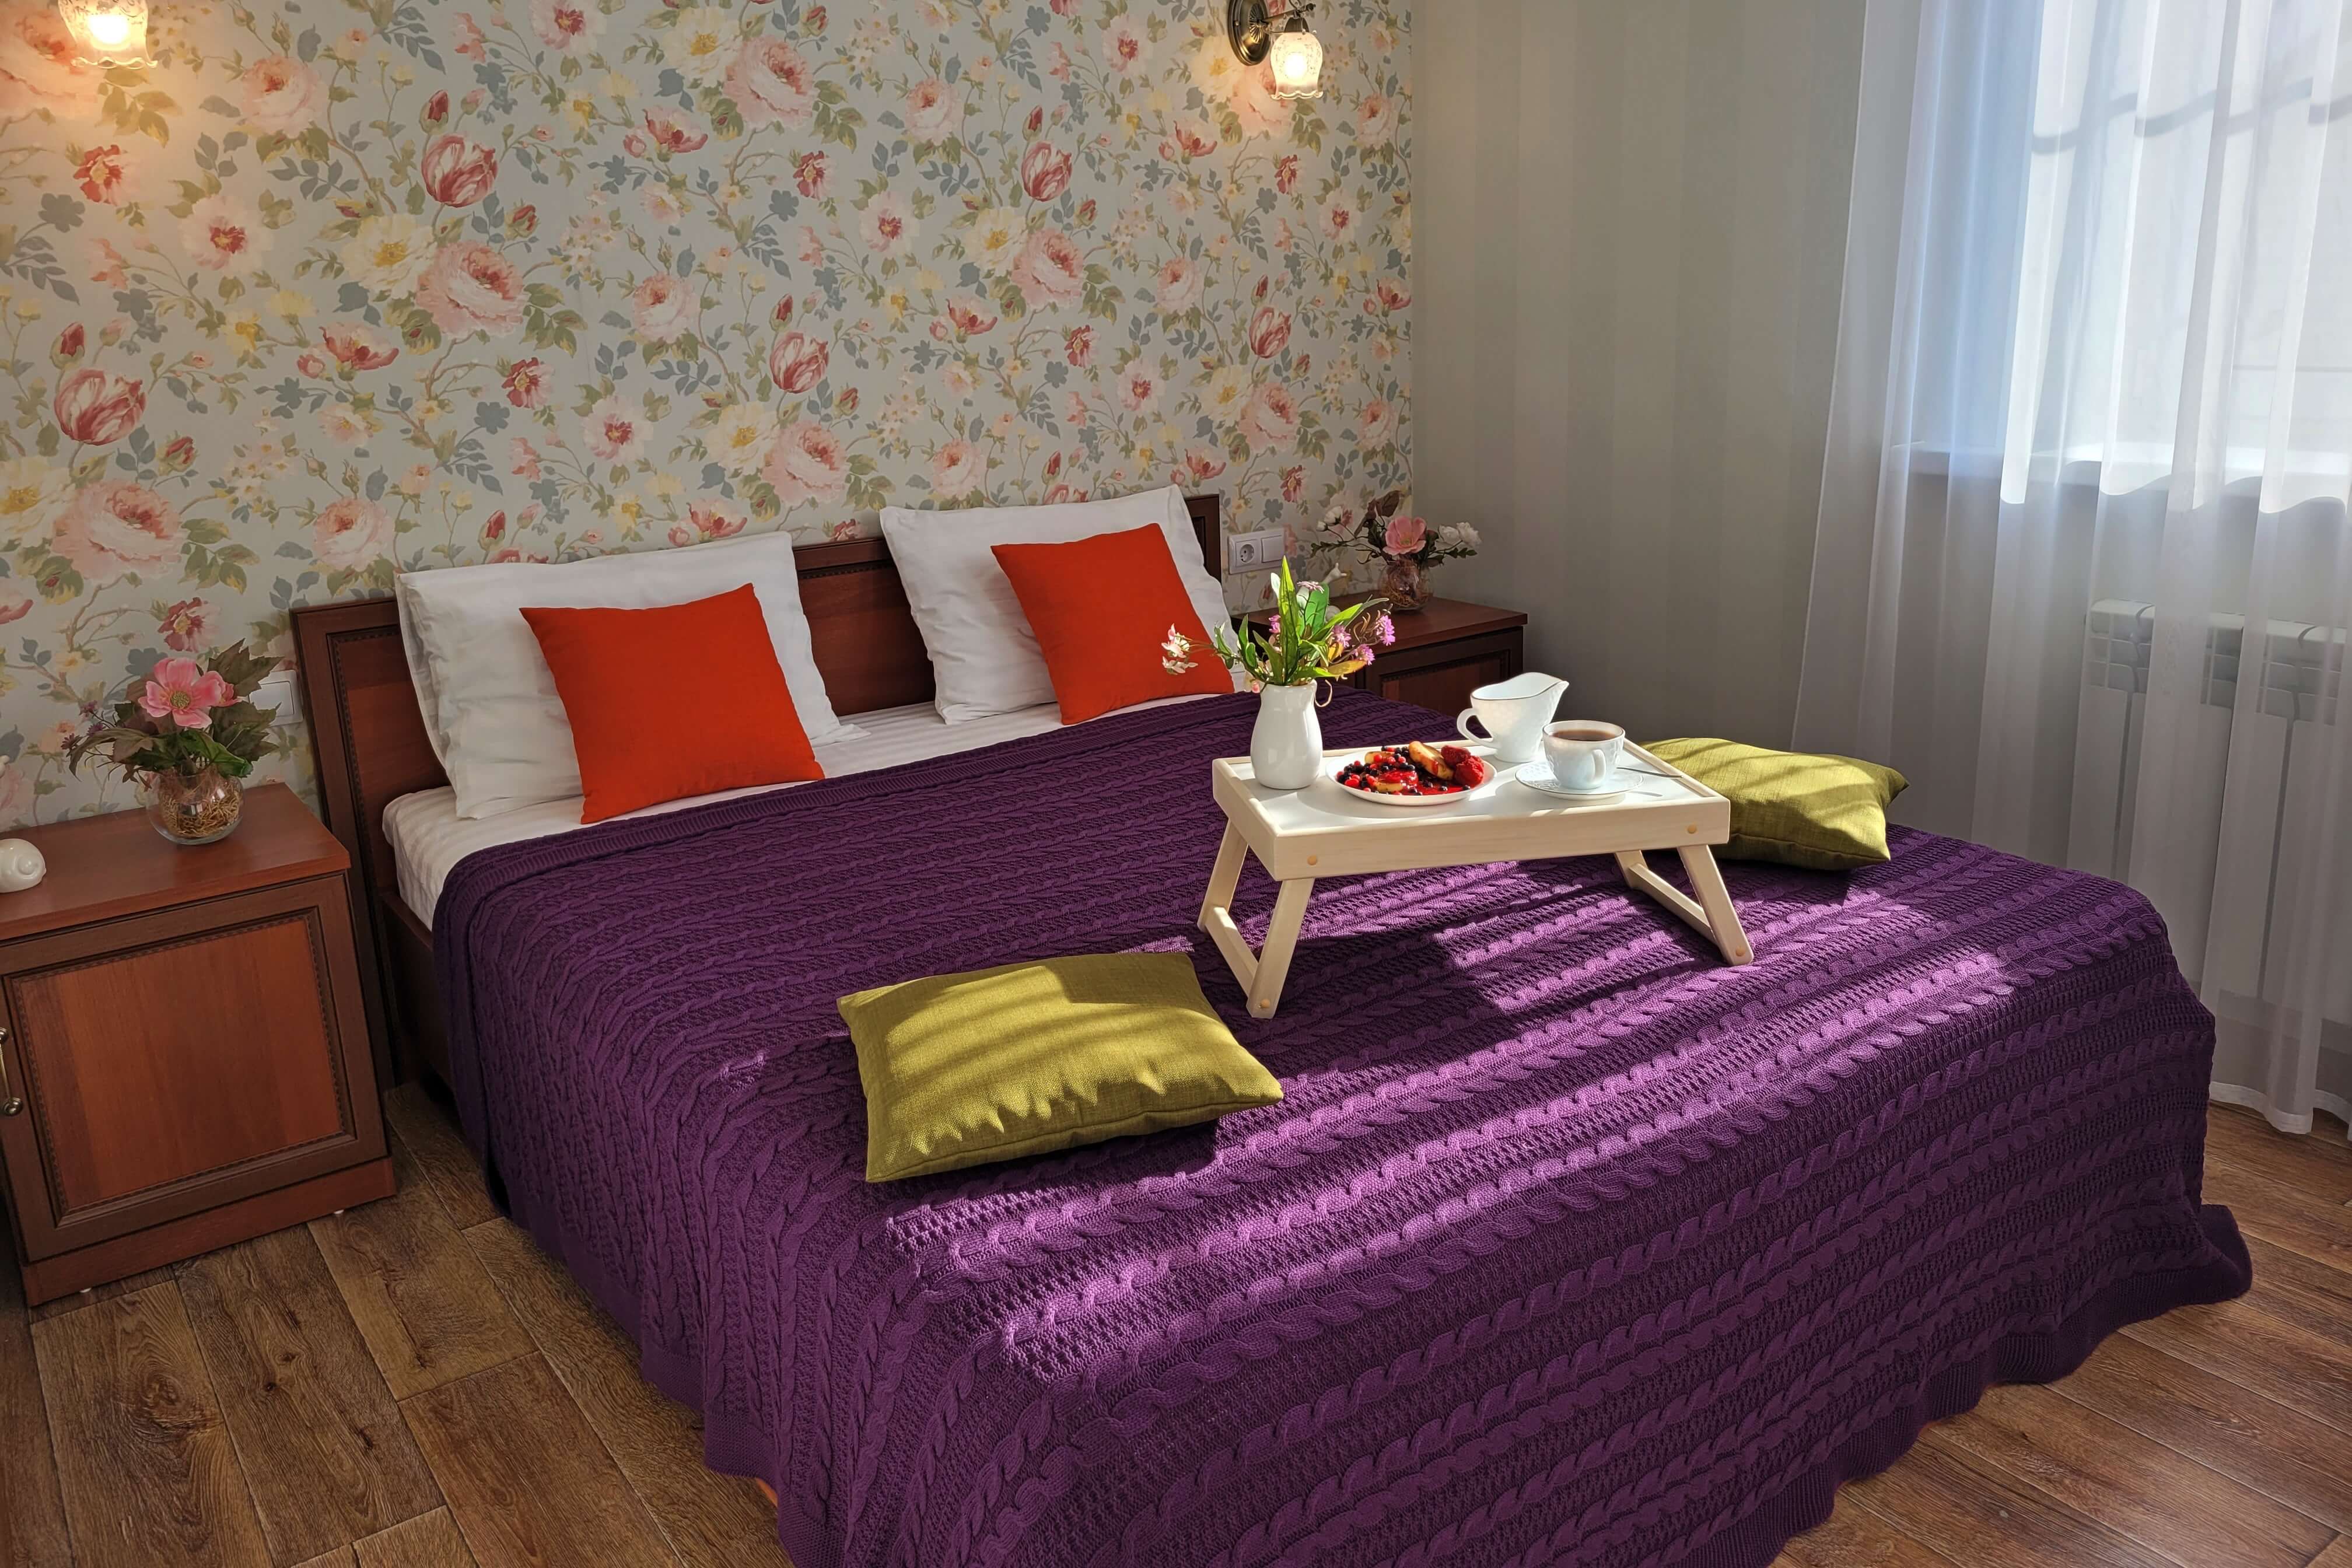 Кровать застелена вязаным фиолетовым пледом.